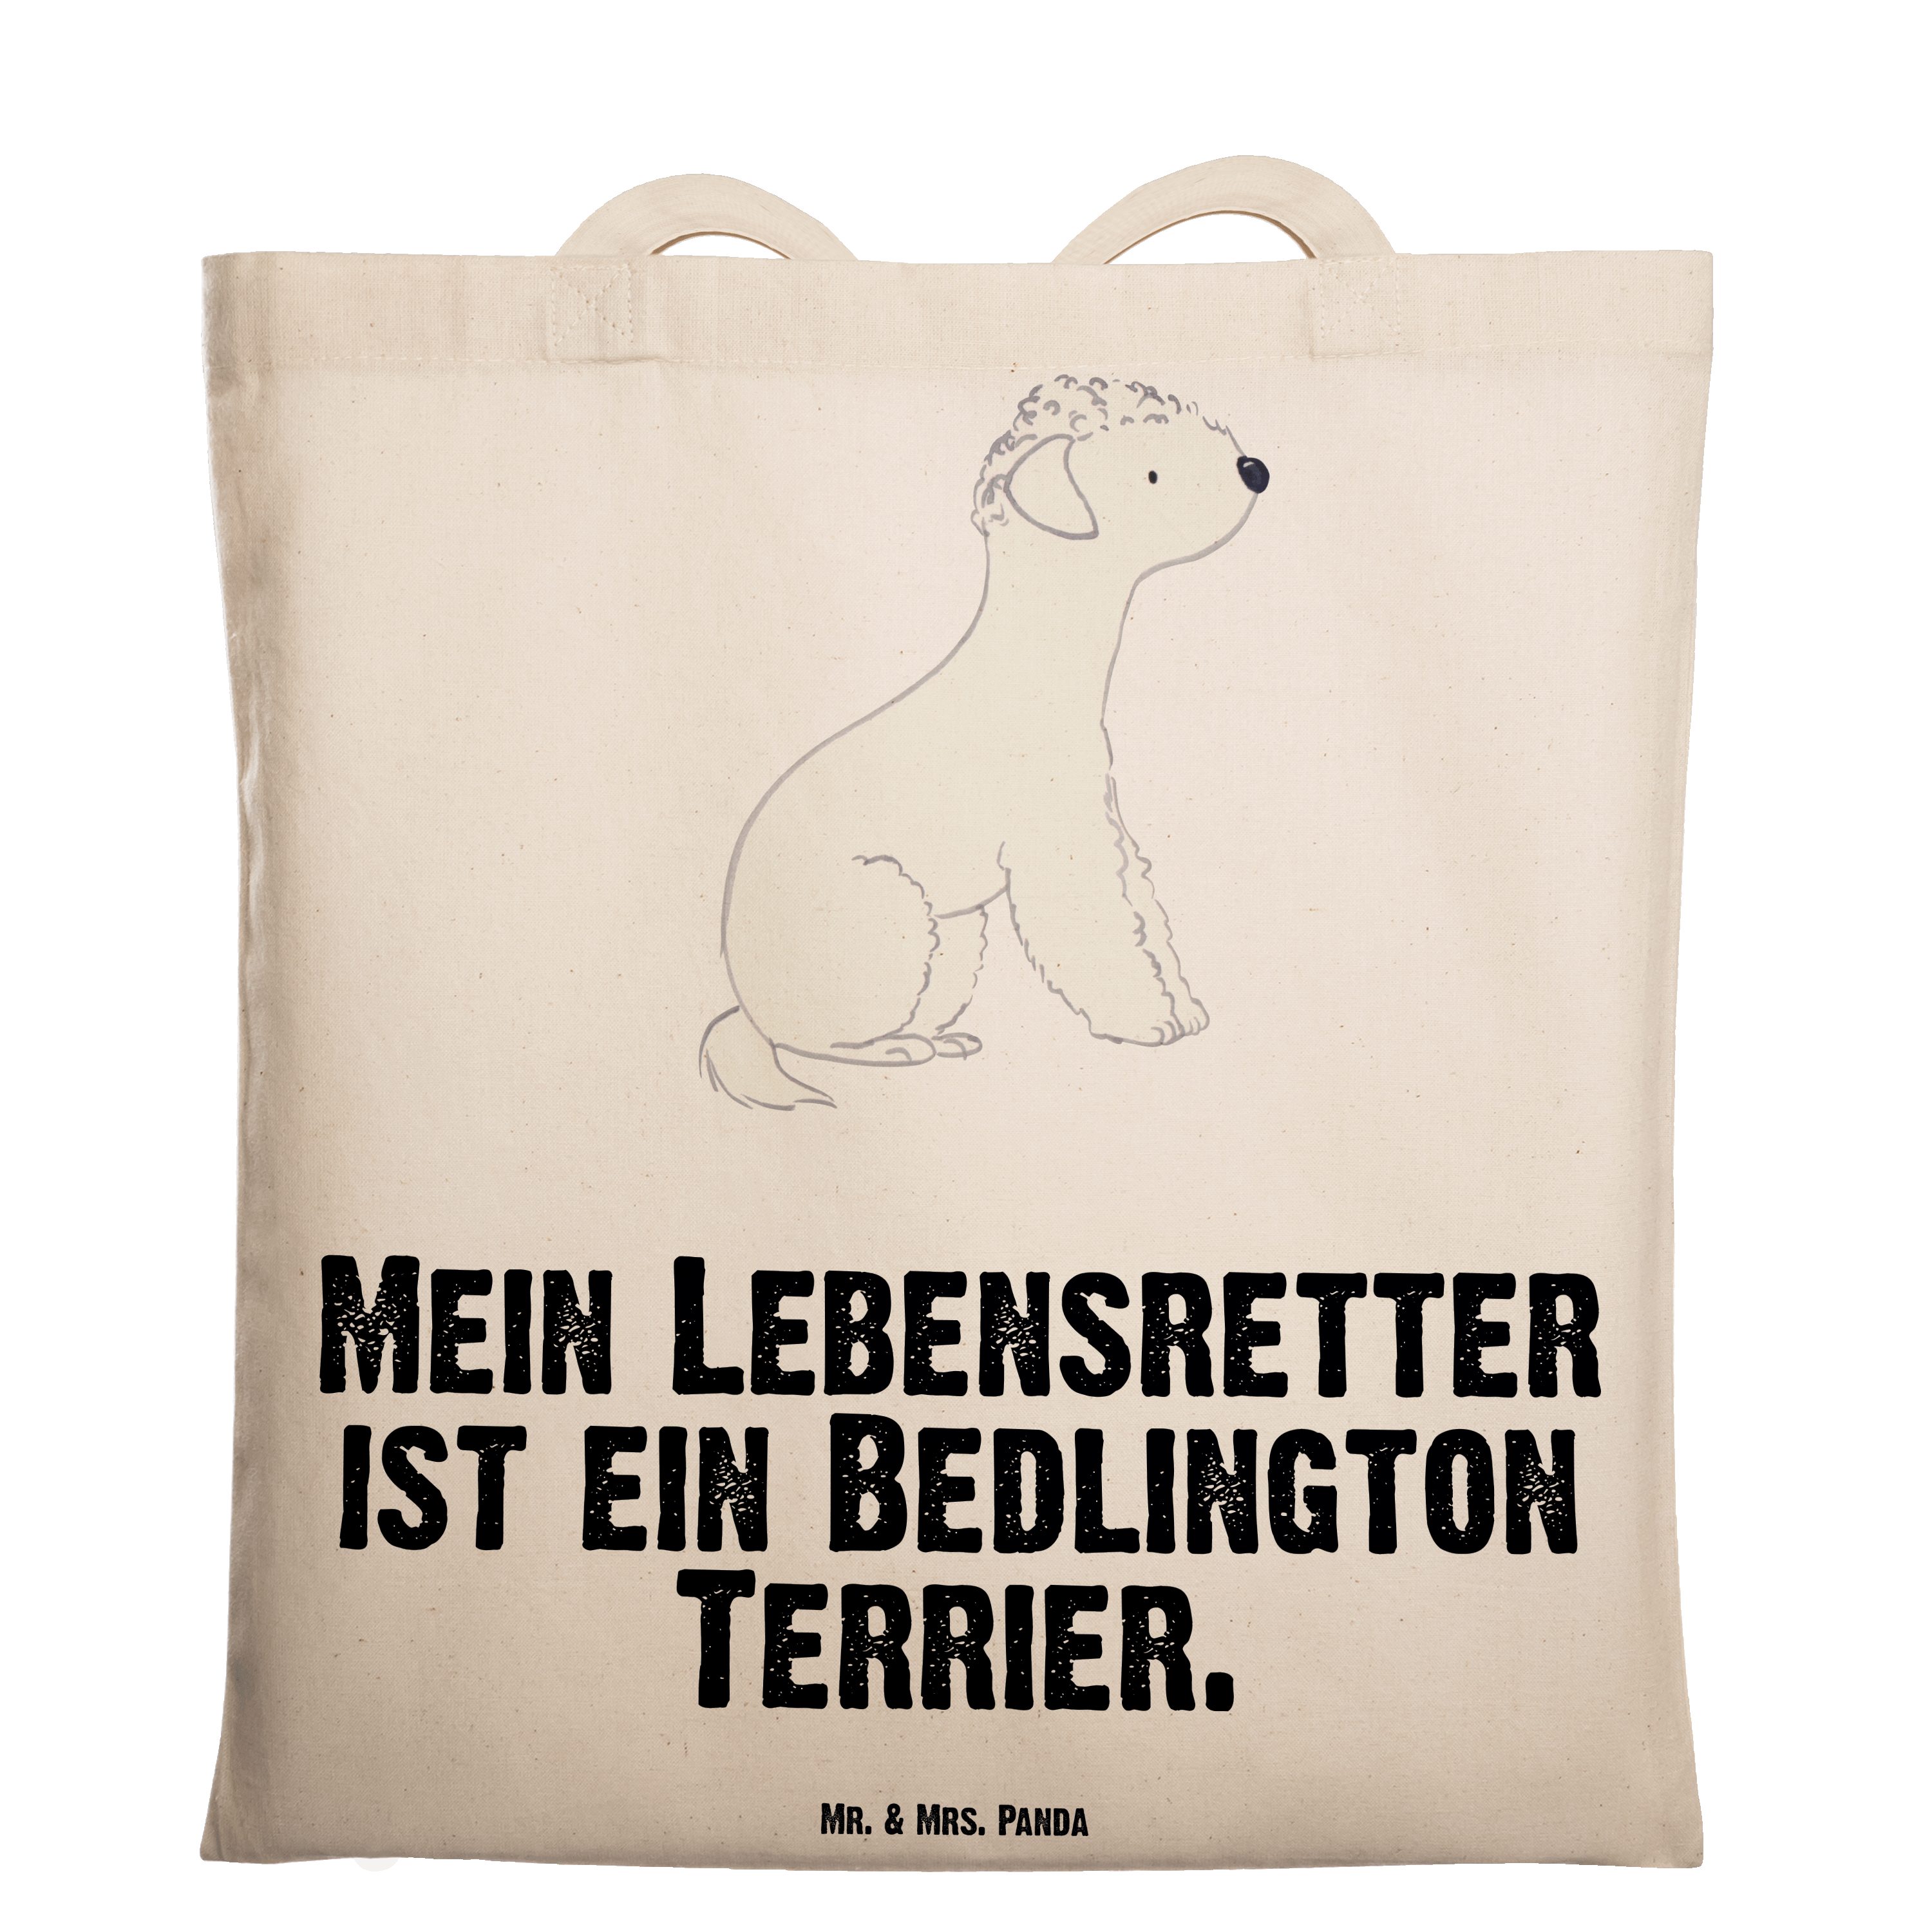 Mr. Transparent & Panda Geschenk, Bedlington (1-tlg) - Terrier Beuteltasch - Mrs. Lebensretter Tragetasche